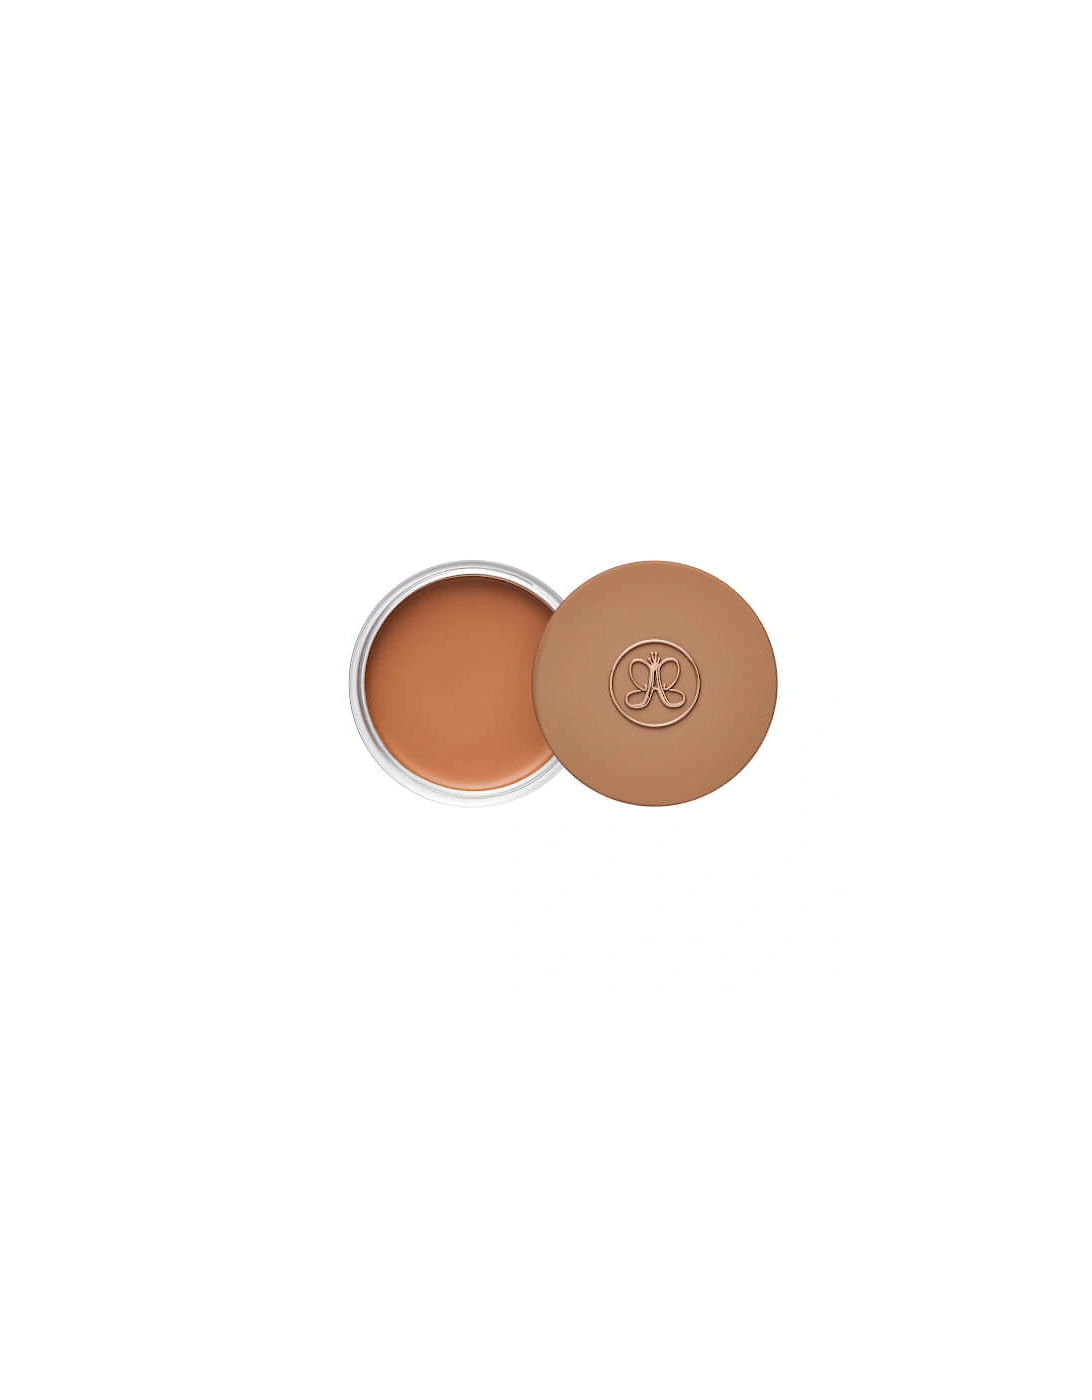 Cream Bronzer - Golden Tan, 2 of 1